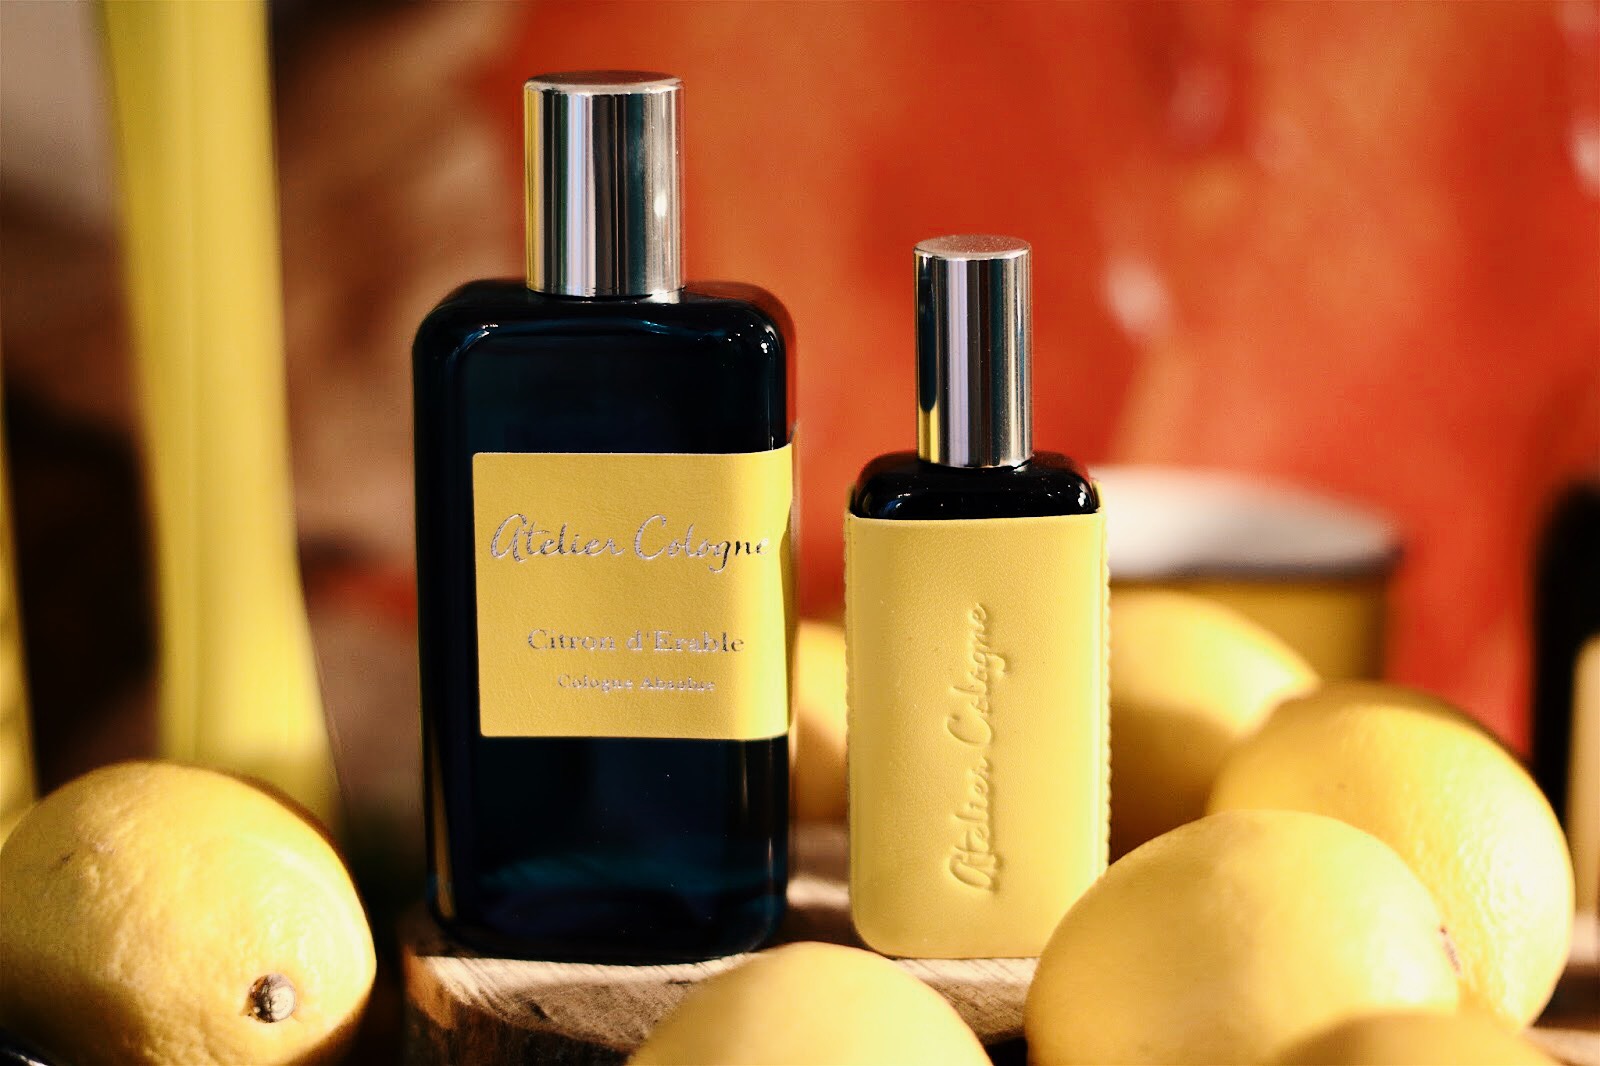 Nước hoa nổi tiếng Citron d'Erable của Atelier Cologne được mệnh danh là sản phẩm thơm nhất trong dòng sản phẩm nước hoa hương cam quýt.